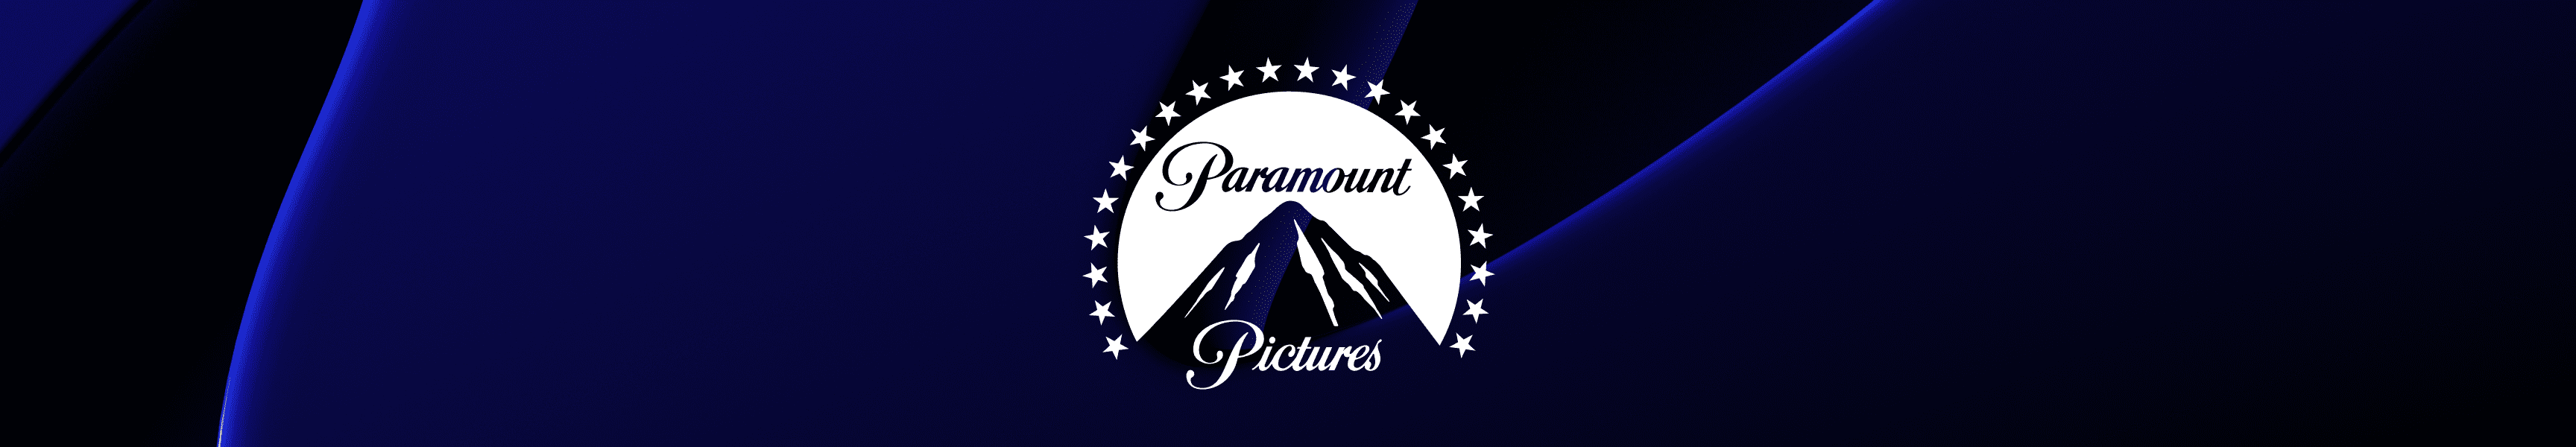 Paramount Pictures Meistverkaufte Produkte